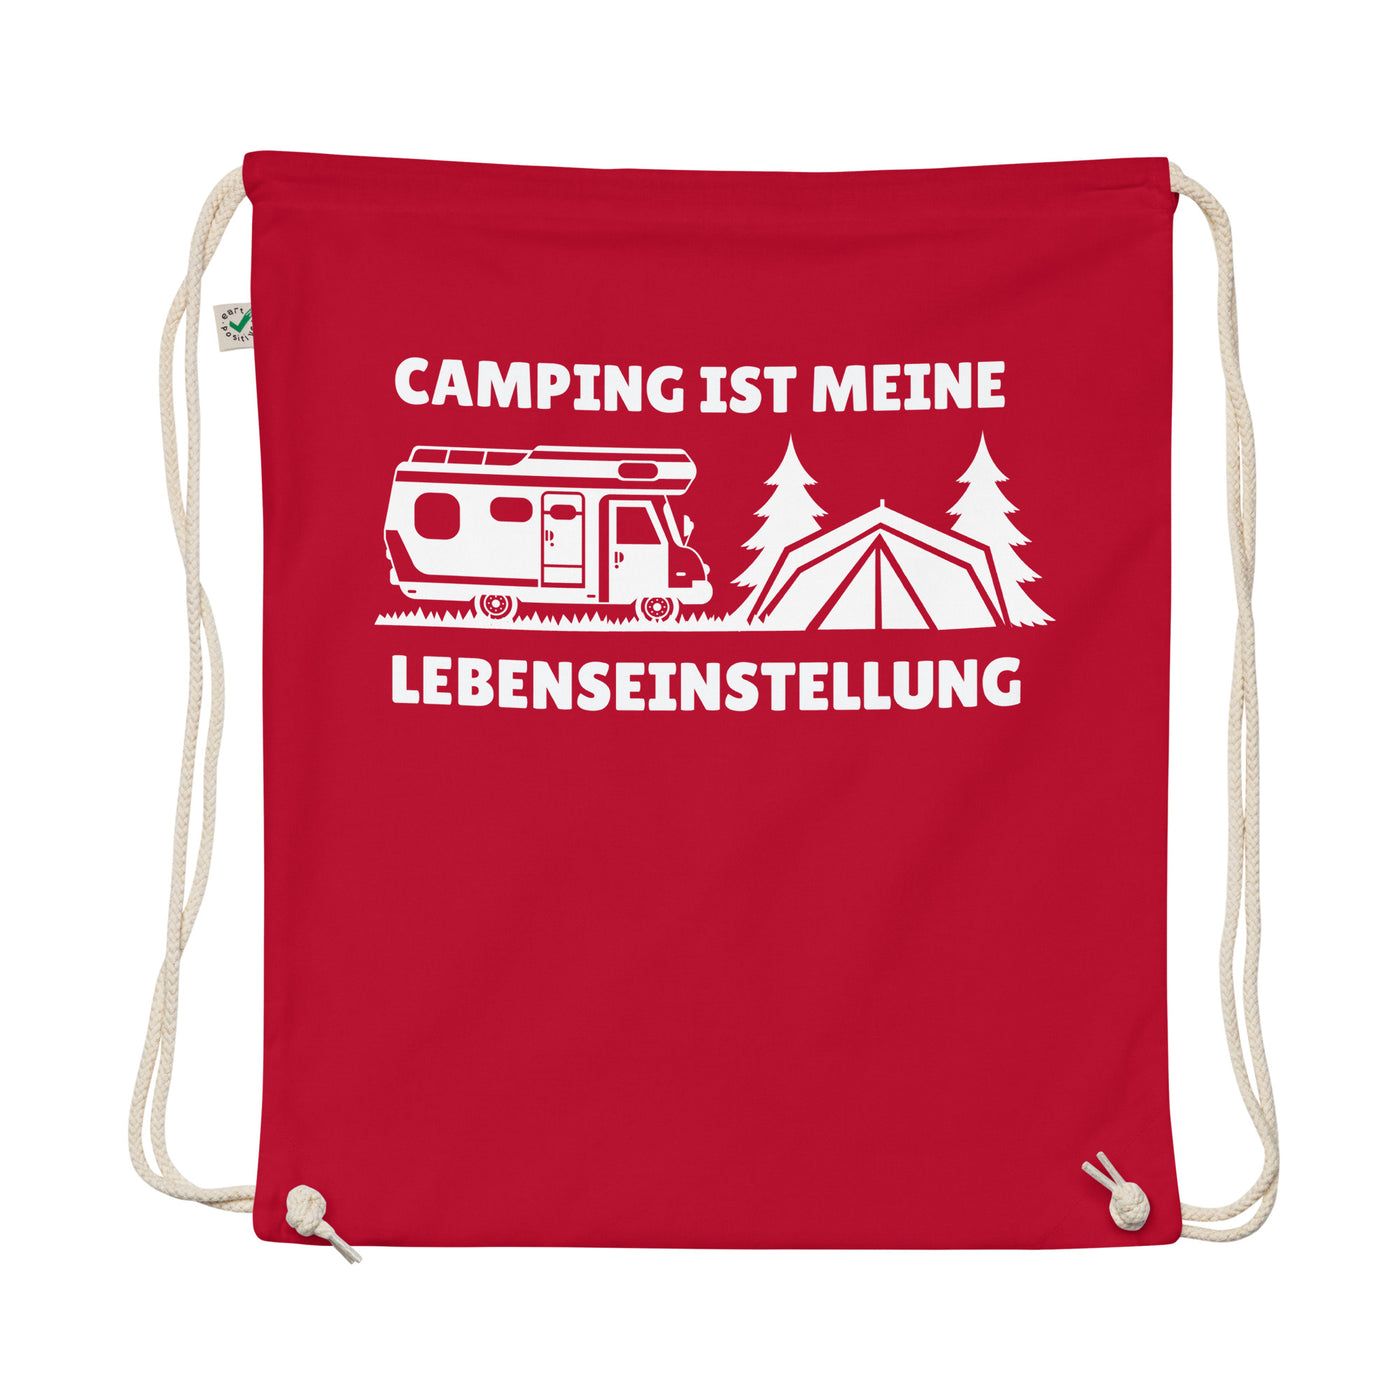 Camping Ist Meine Lebenseinstellung - Organic Turnbeutel camping